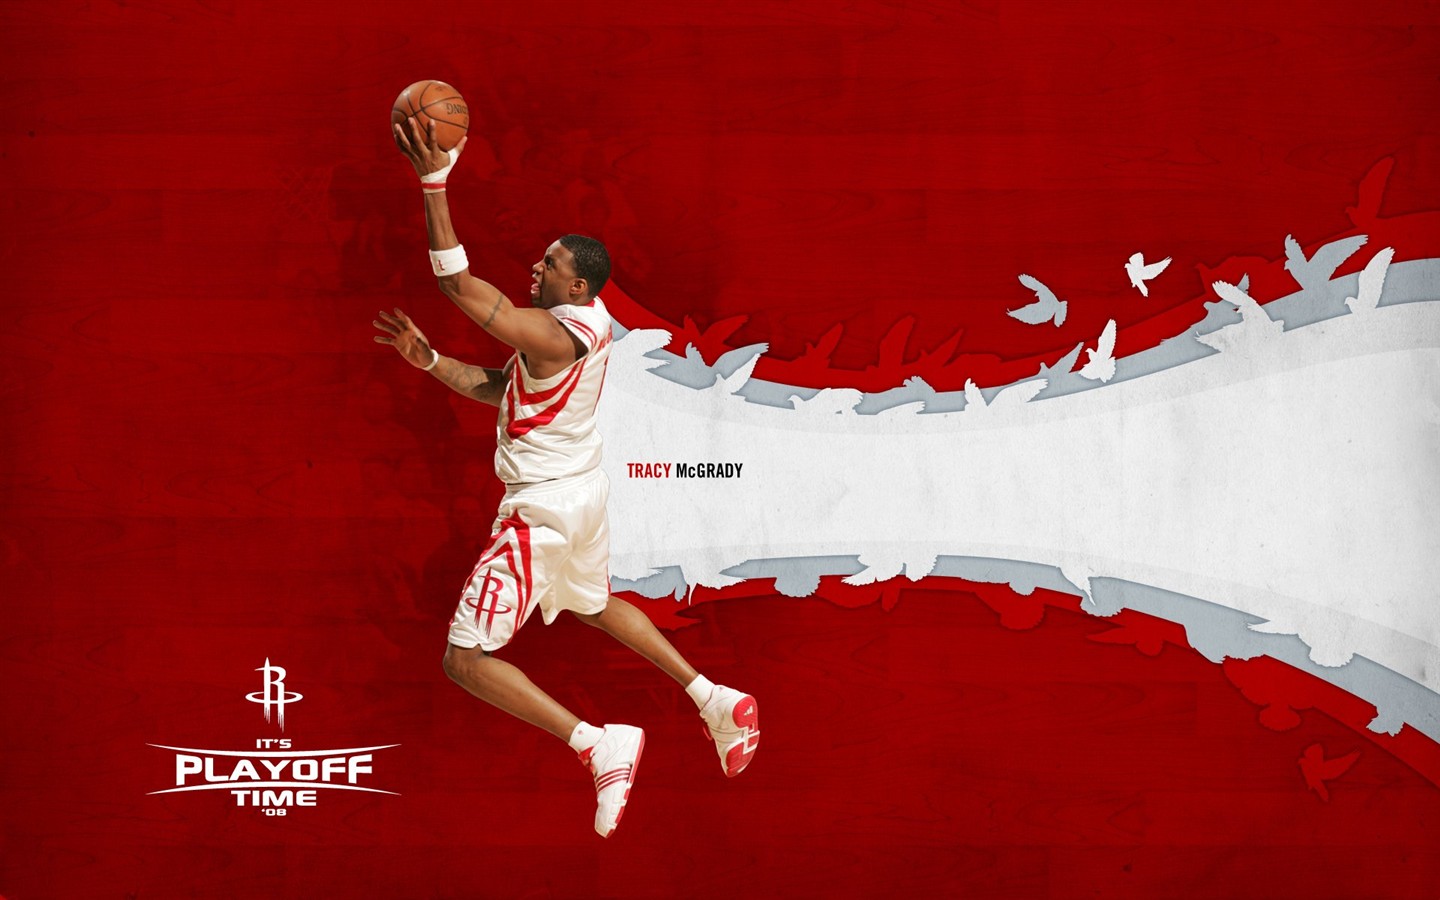 NBA Houston Rockets 2009 Playoff-Tapete #6 - 1440x900